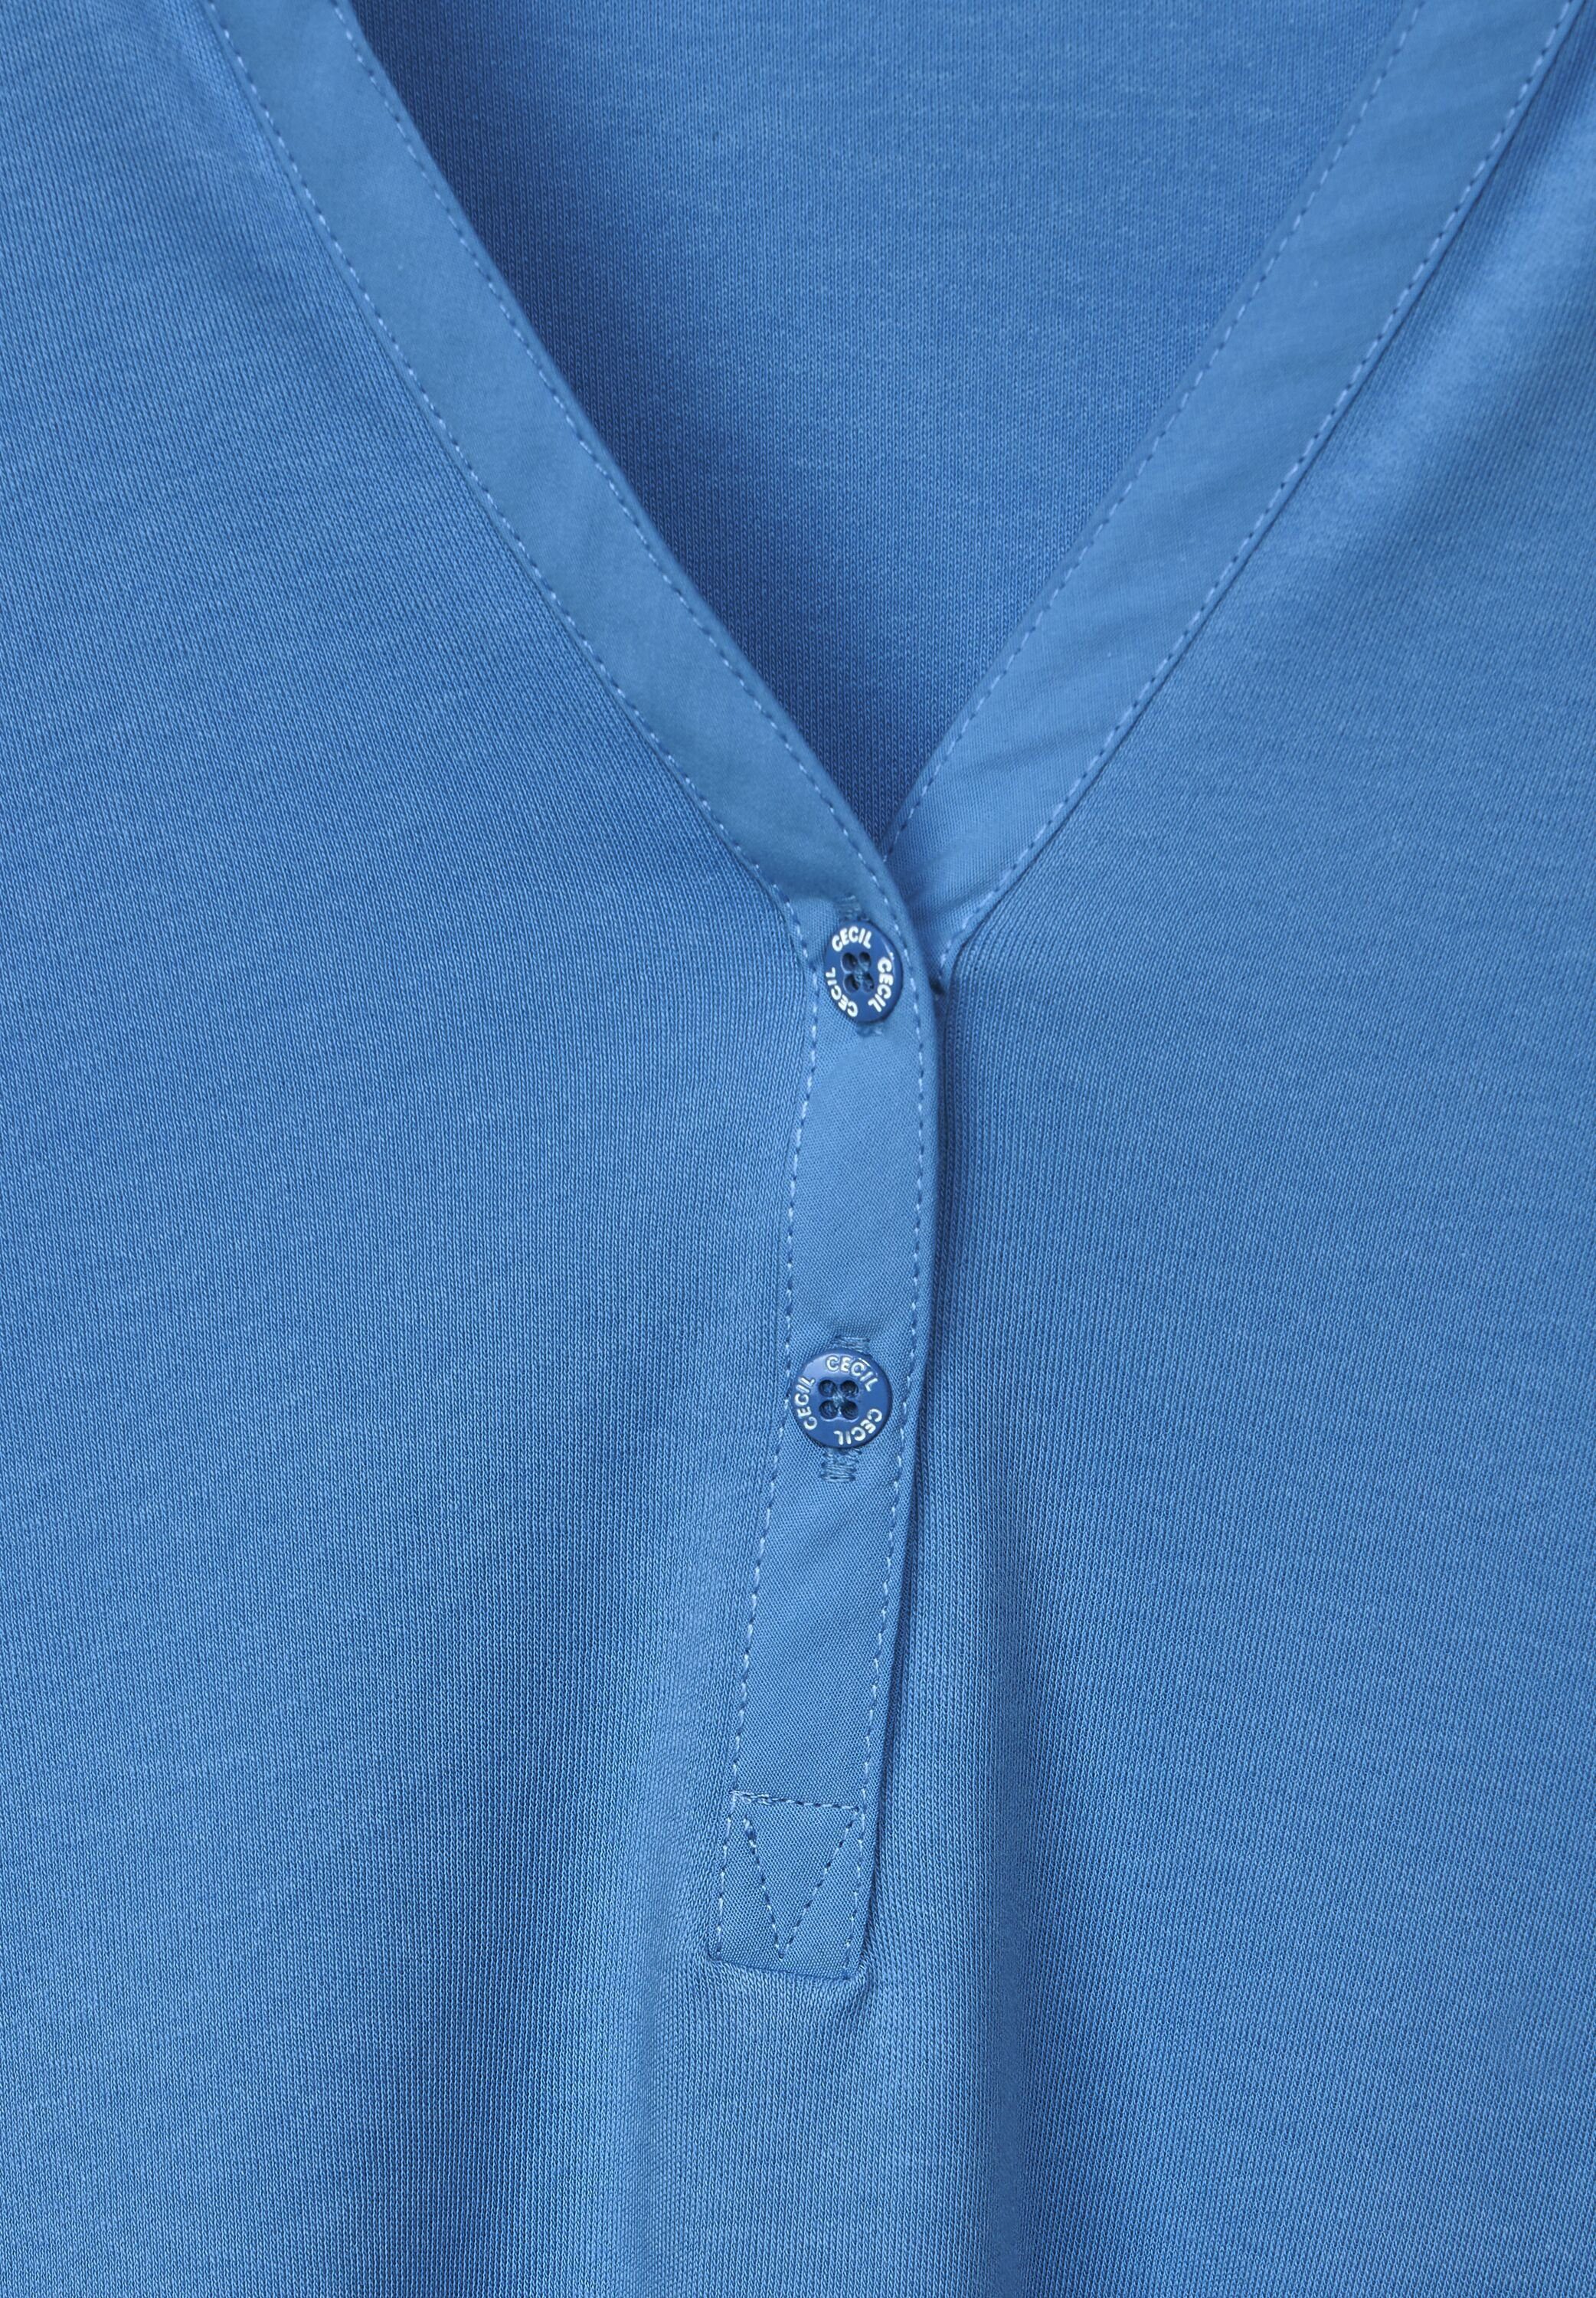 Kragen campanula Knopfleiste Ausschnitt Cecil halbe Poloshirt am und blue